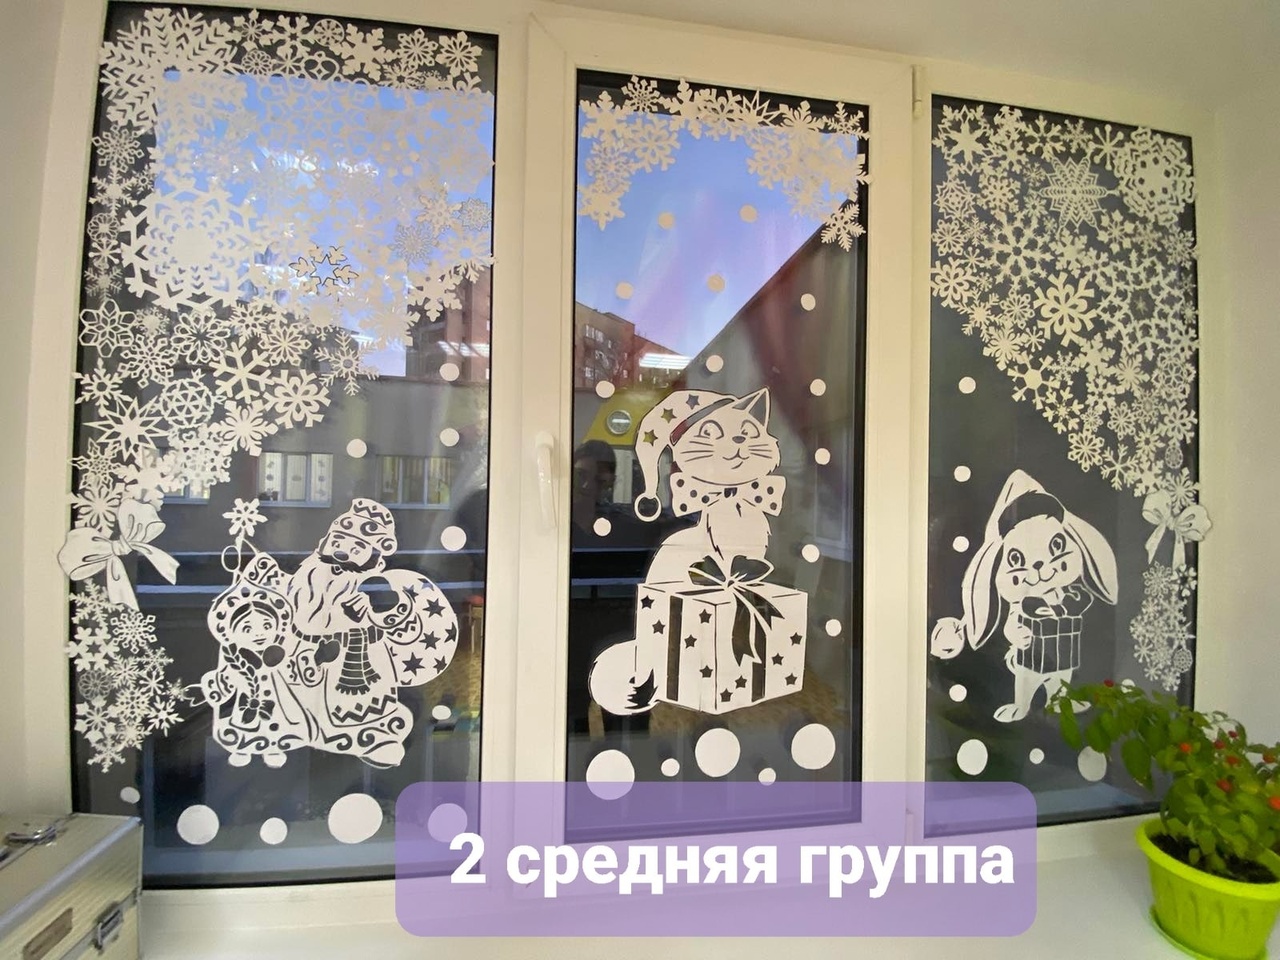 &amp;quot;А из нашего окна, сказка зимняя видна&amp;quot;.